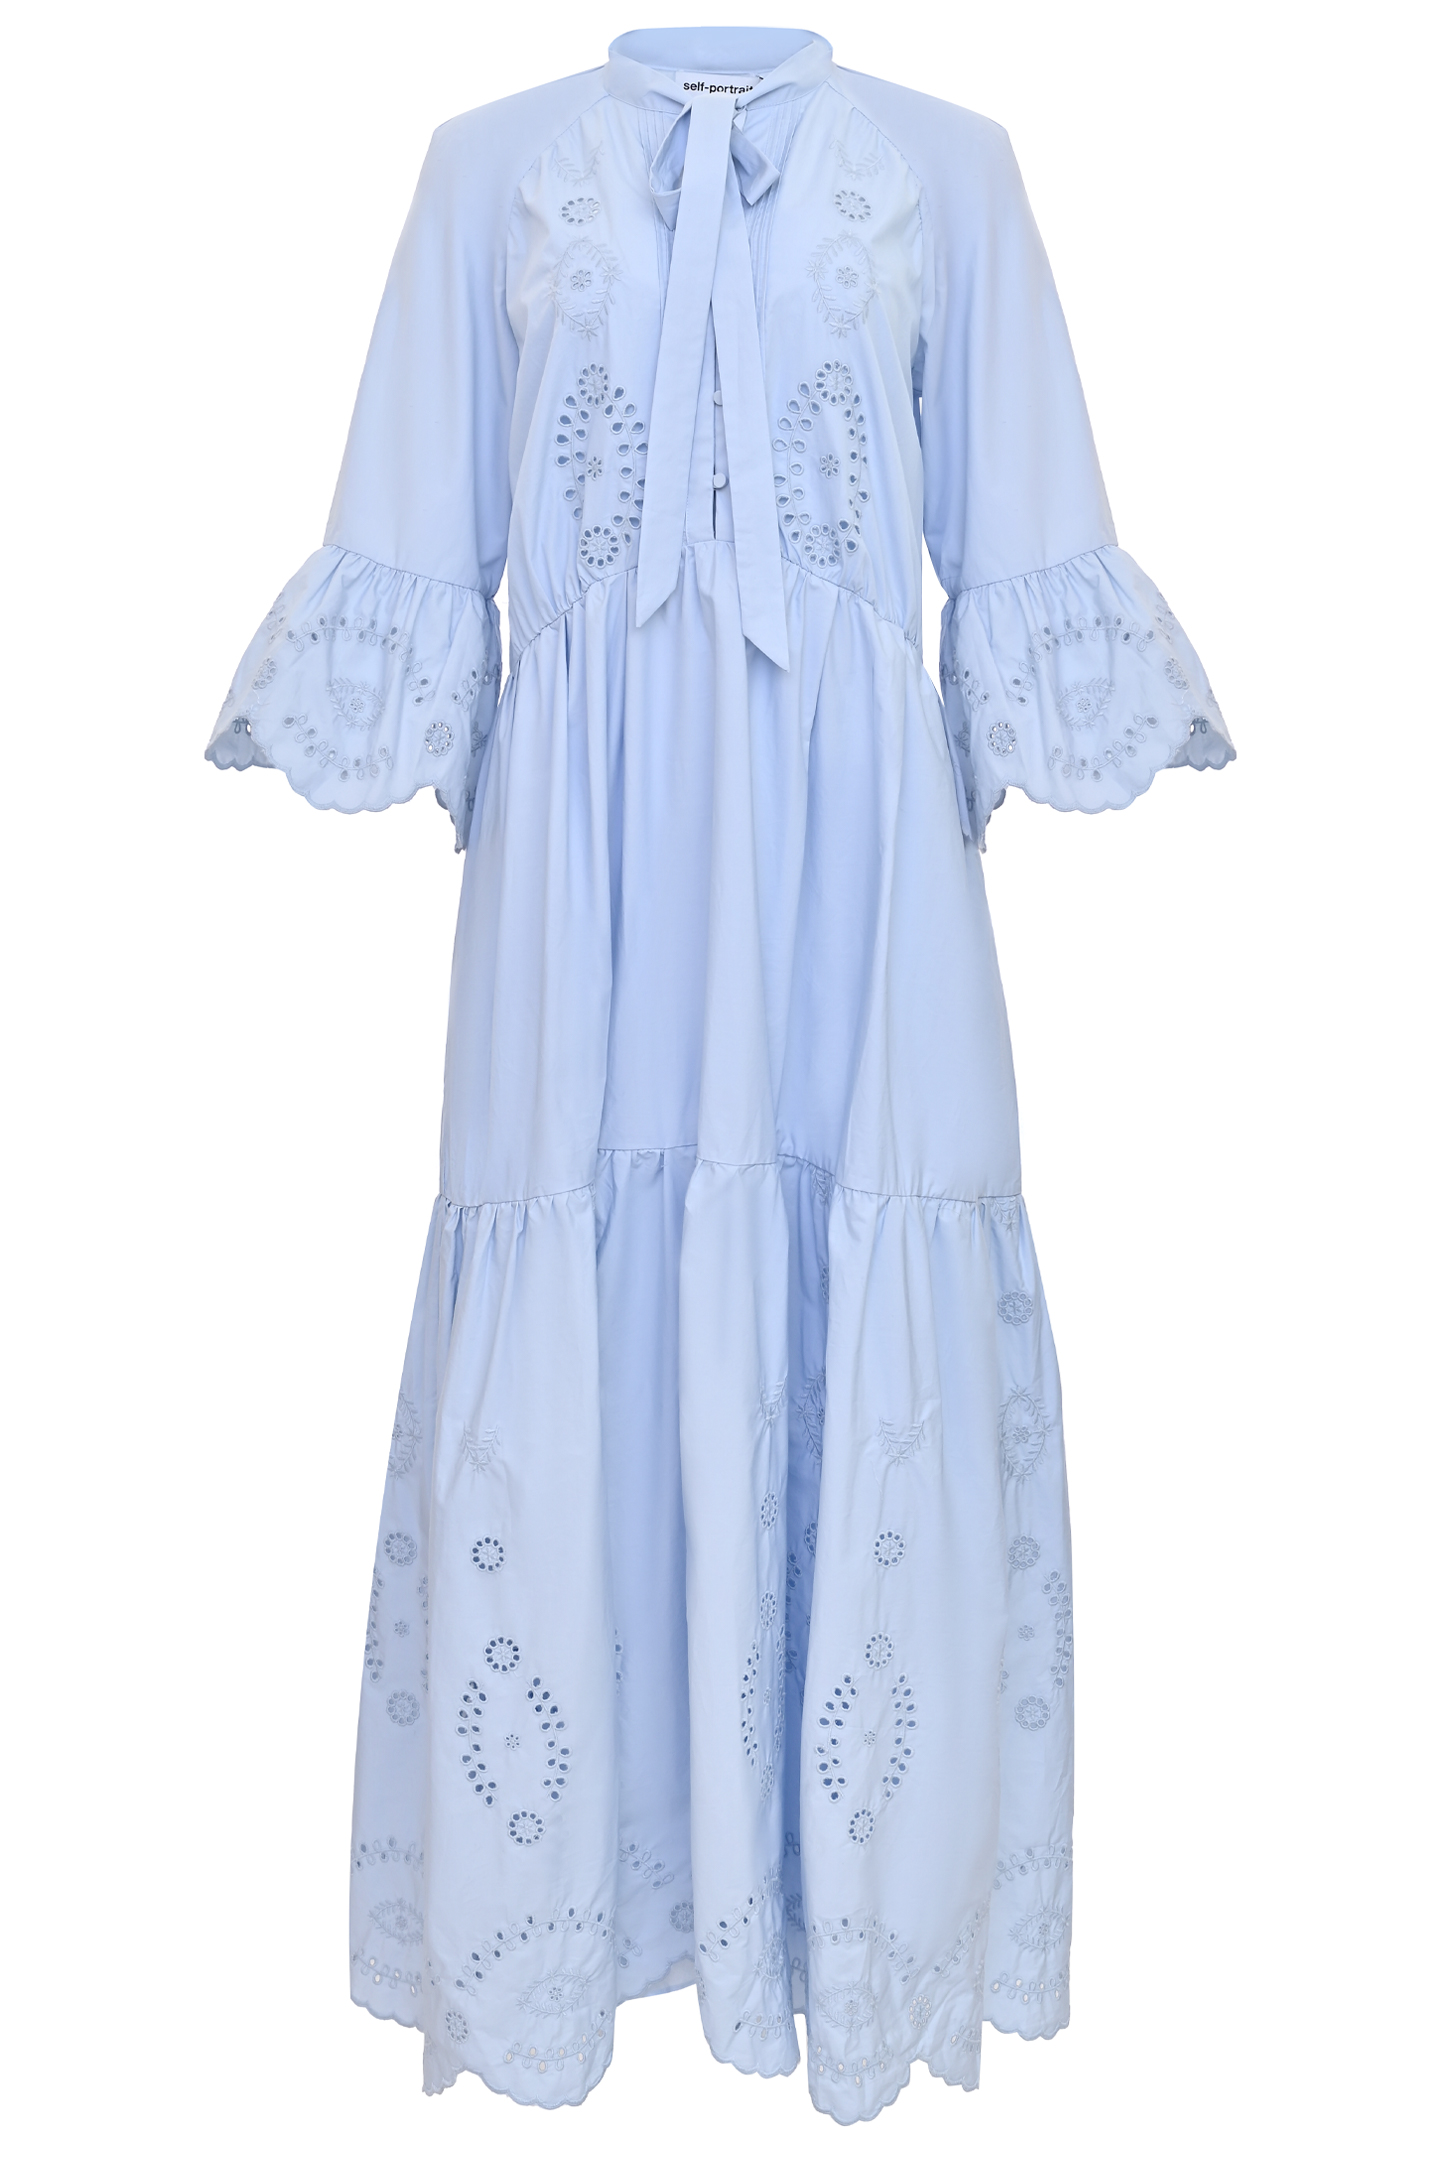 Платье SELF PORTRAIT RS22-061M, цвет: Голубой, Женский